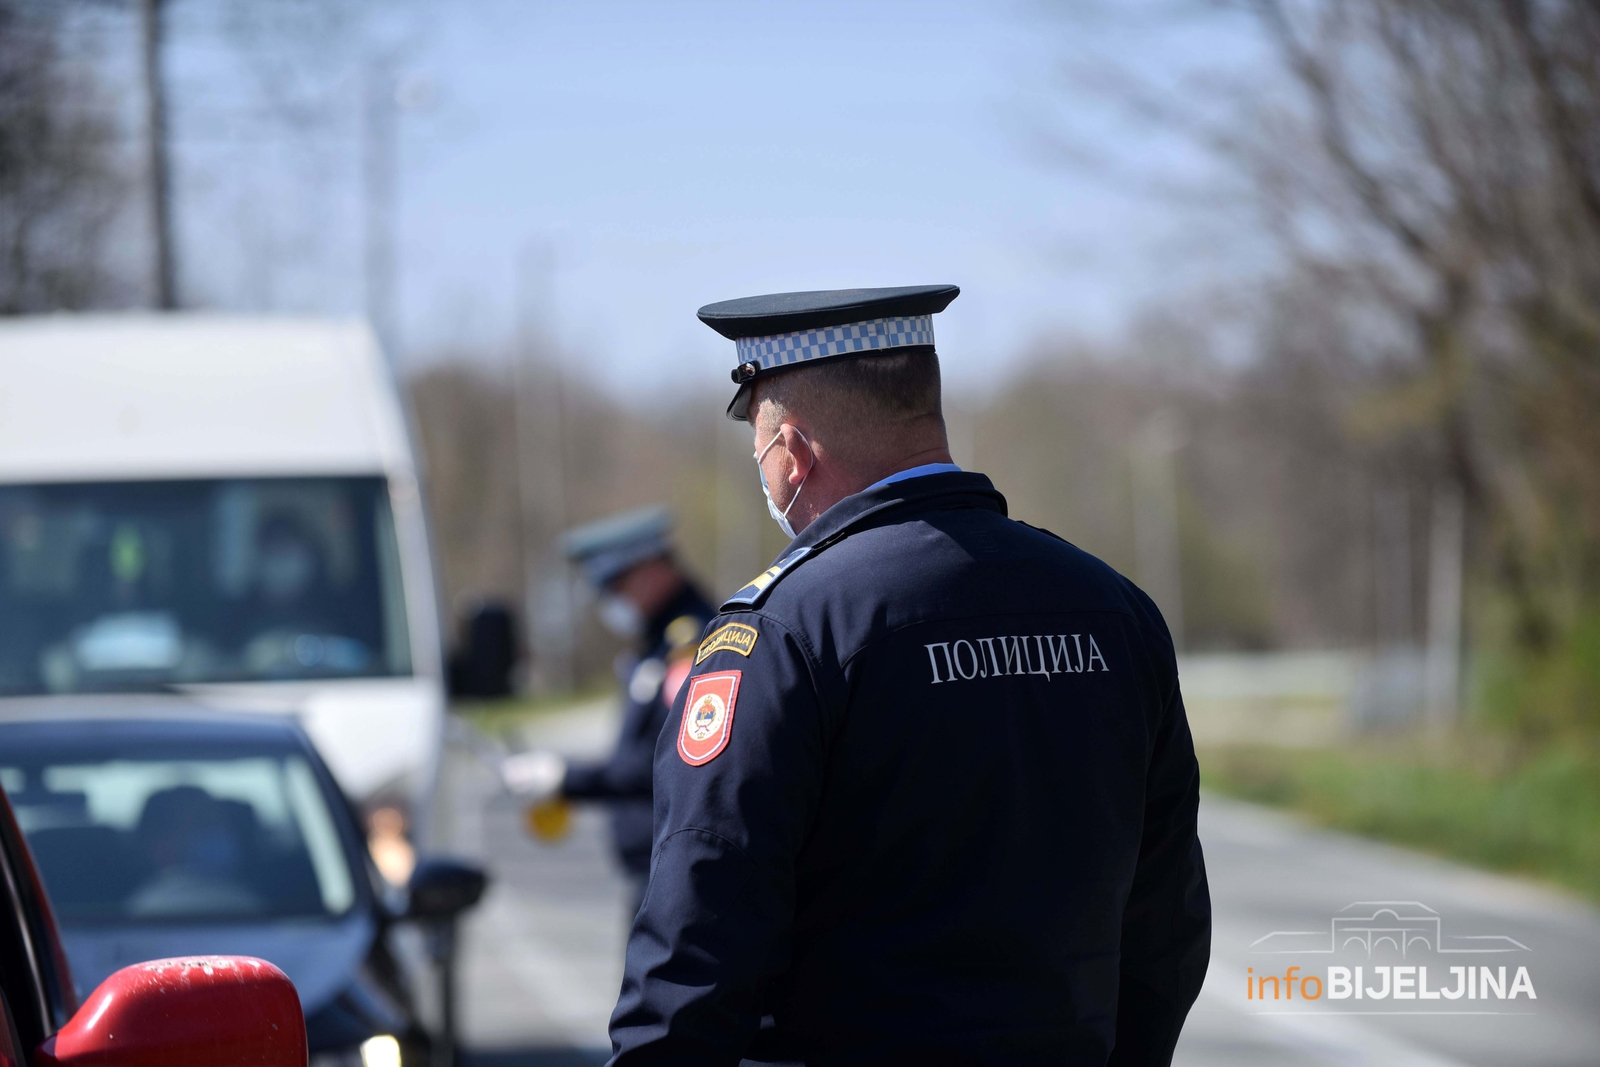 PU Bijeljina: Vozio bez vozačke, a za kazne dugovao 34.710KM, policija mu oduzela BMW